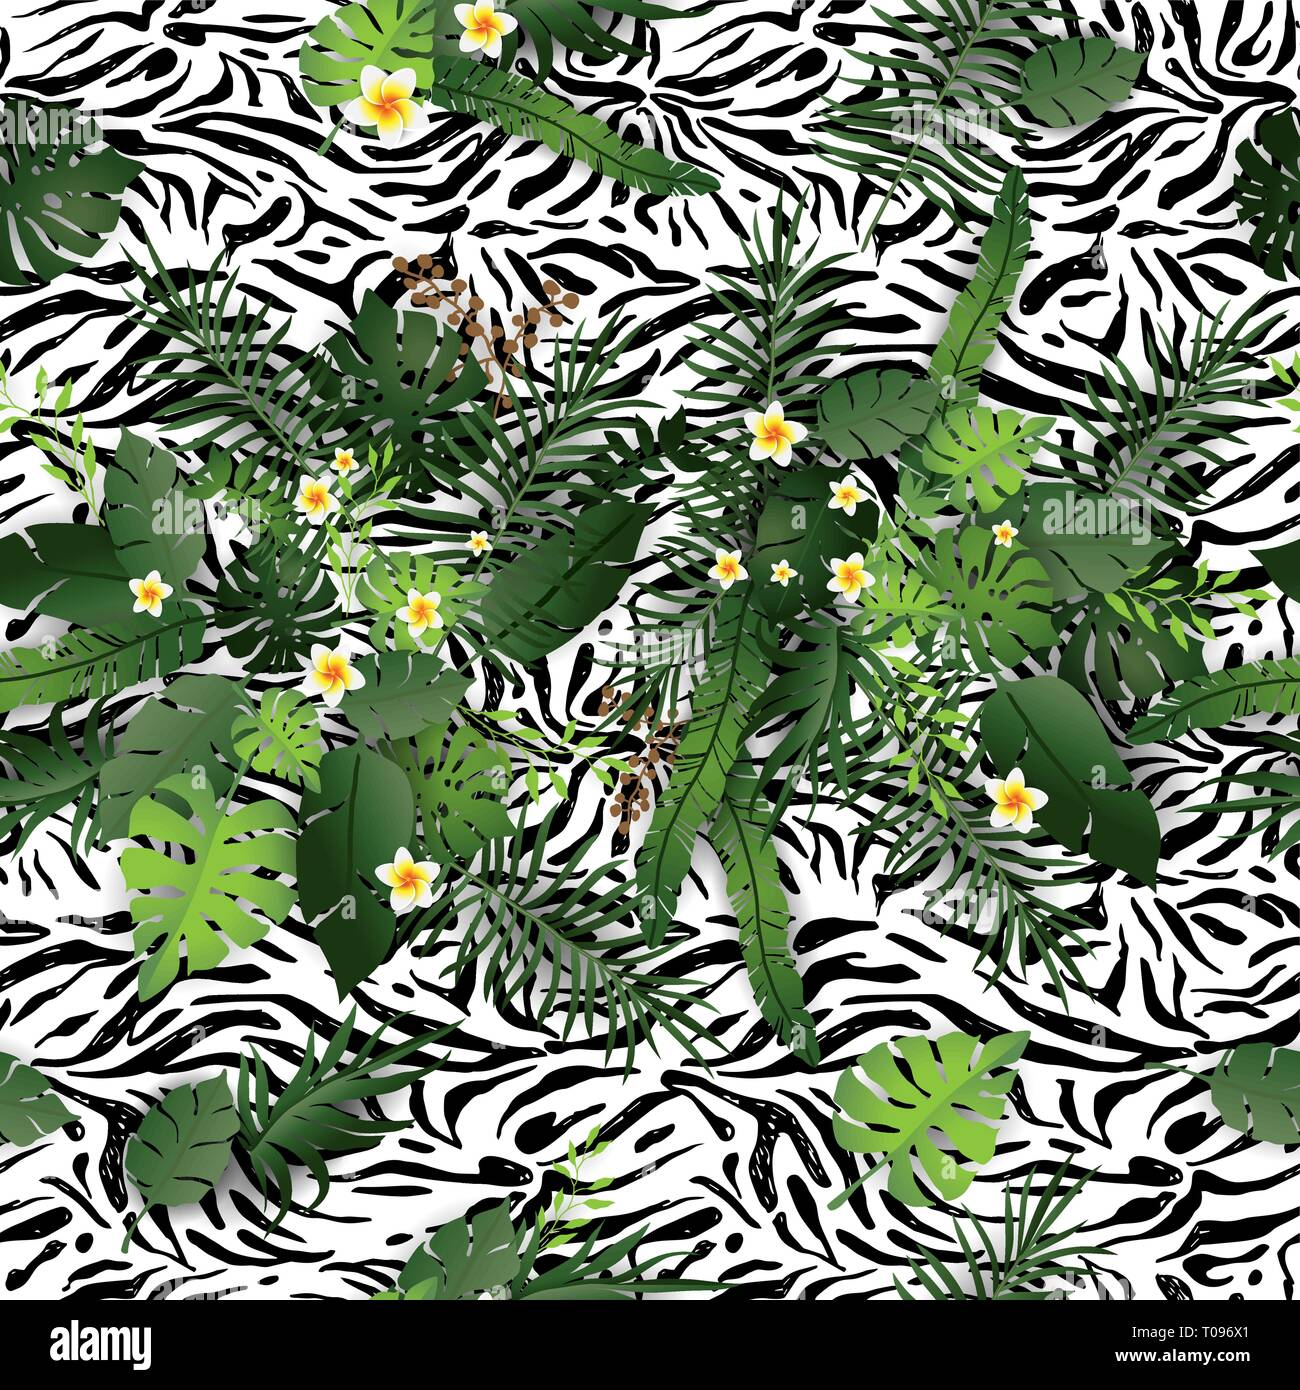 Nahtlose Muster exotische Floral Background. Tropische Blumen und Blätter auf die tierische Haut Kulisse. Grün und Zebra-druck nahtloses Design Stock Vektor